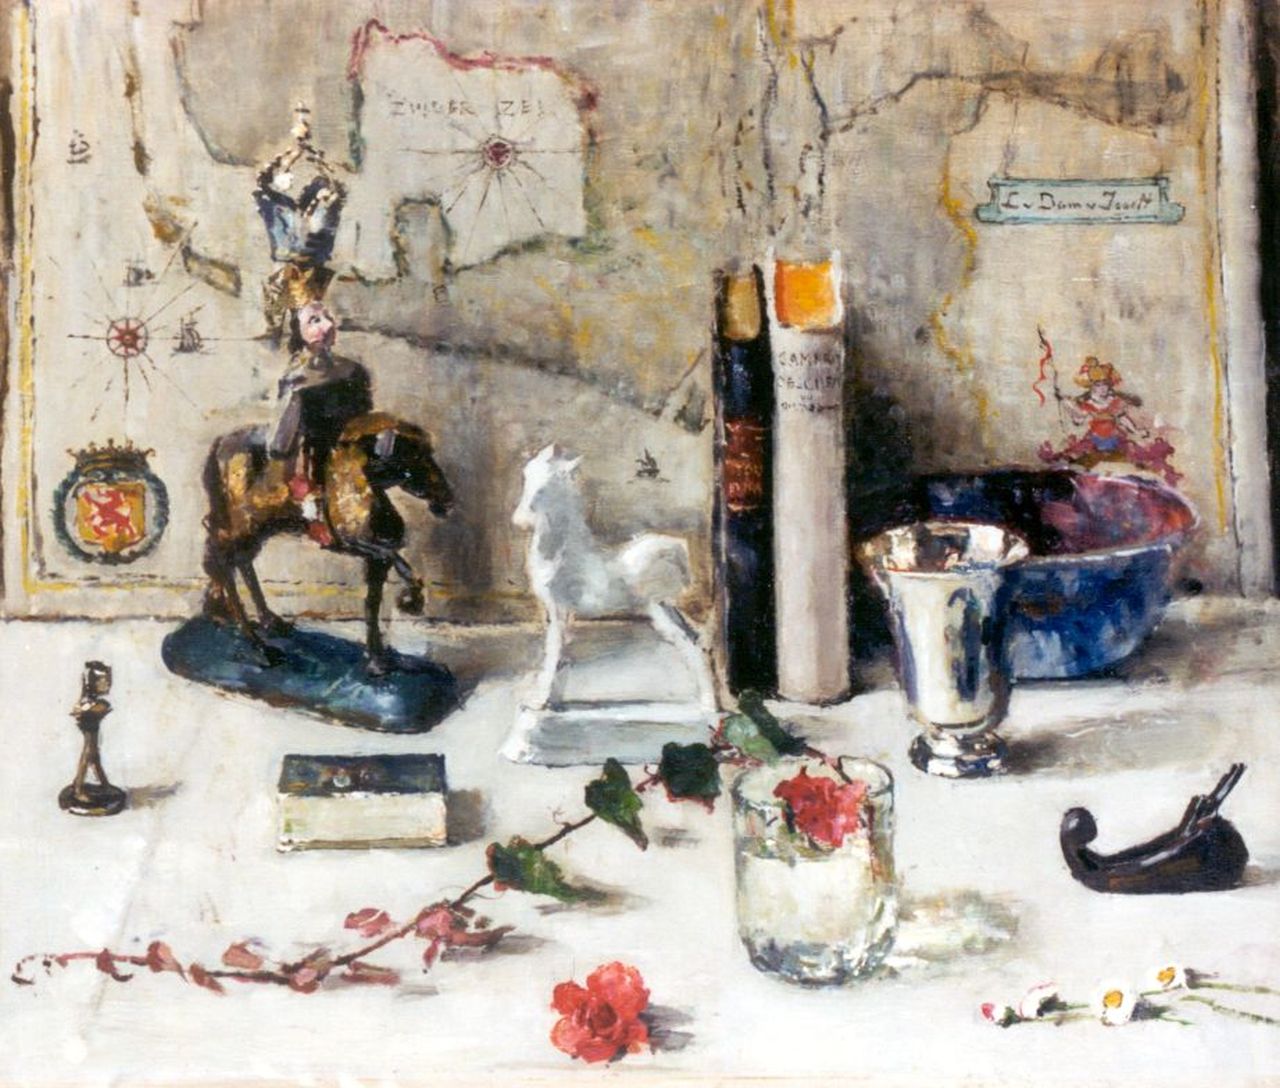 Dam van Isselt L. van | Lucie van Dam van Isselt, A still life, Öl auf Holz 53,0 x 62,7 cm, signed u.r. und painted in 1948